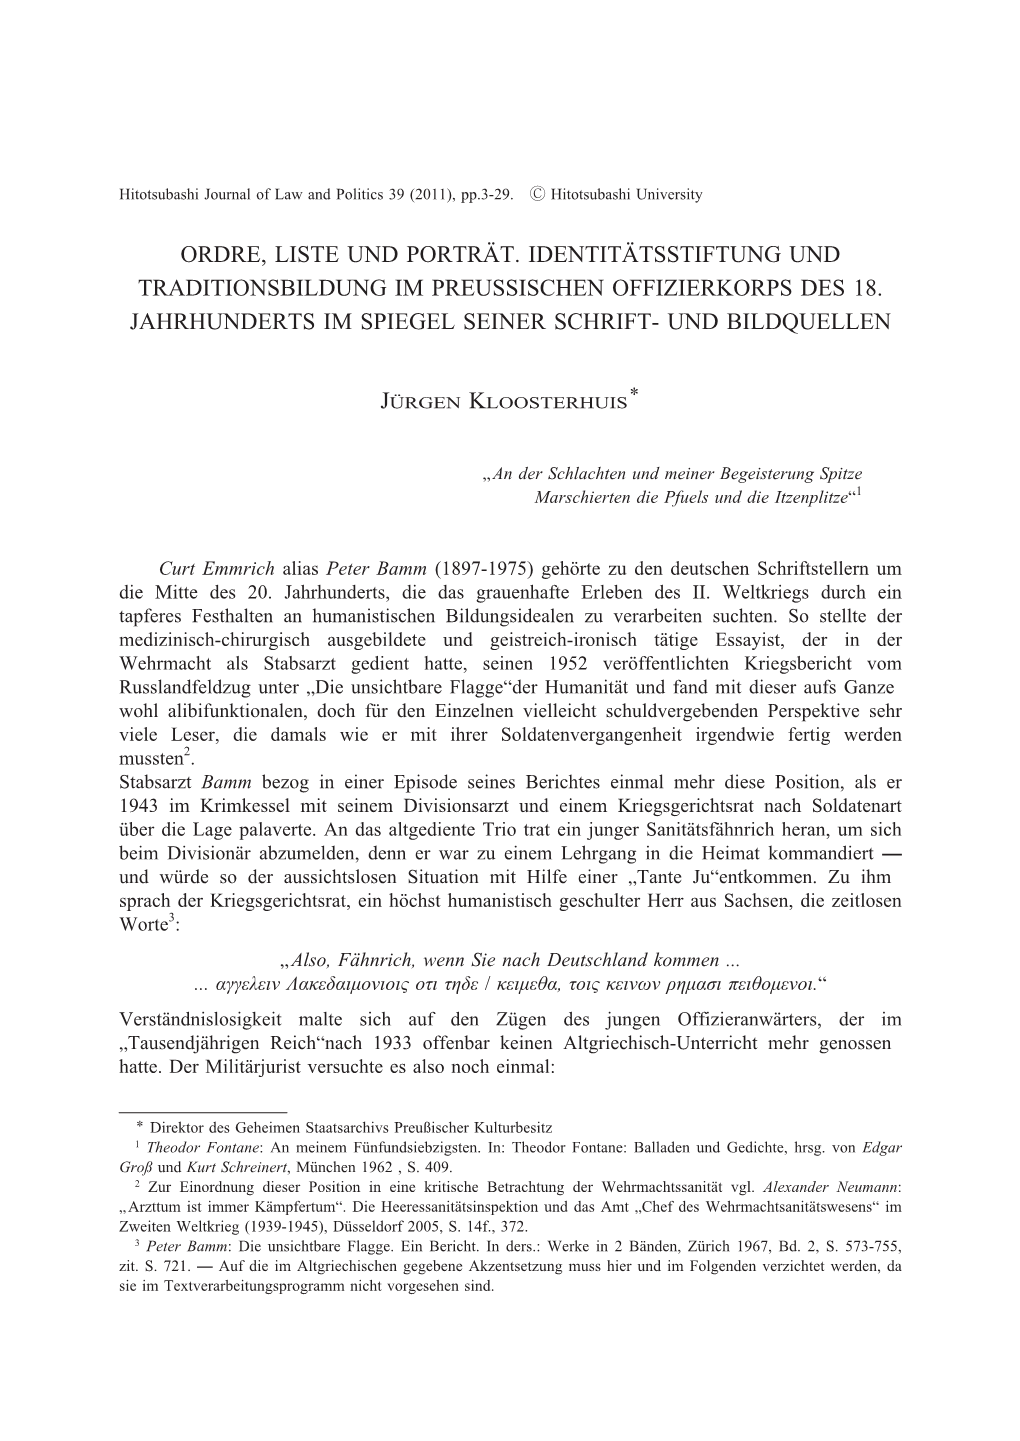 Ordre, Liste Und Porträt. Identitätsstiftung Und Traditionsbildung Im Preussischen Offizierkorps Des 18